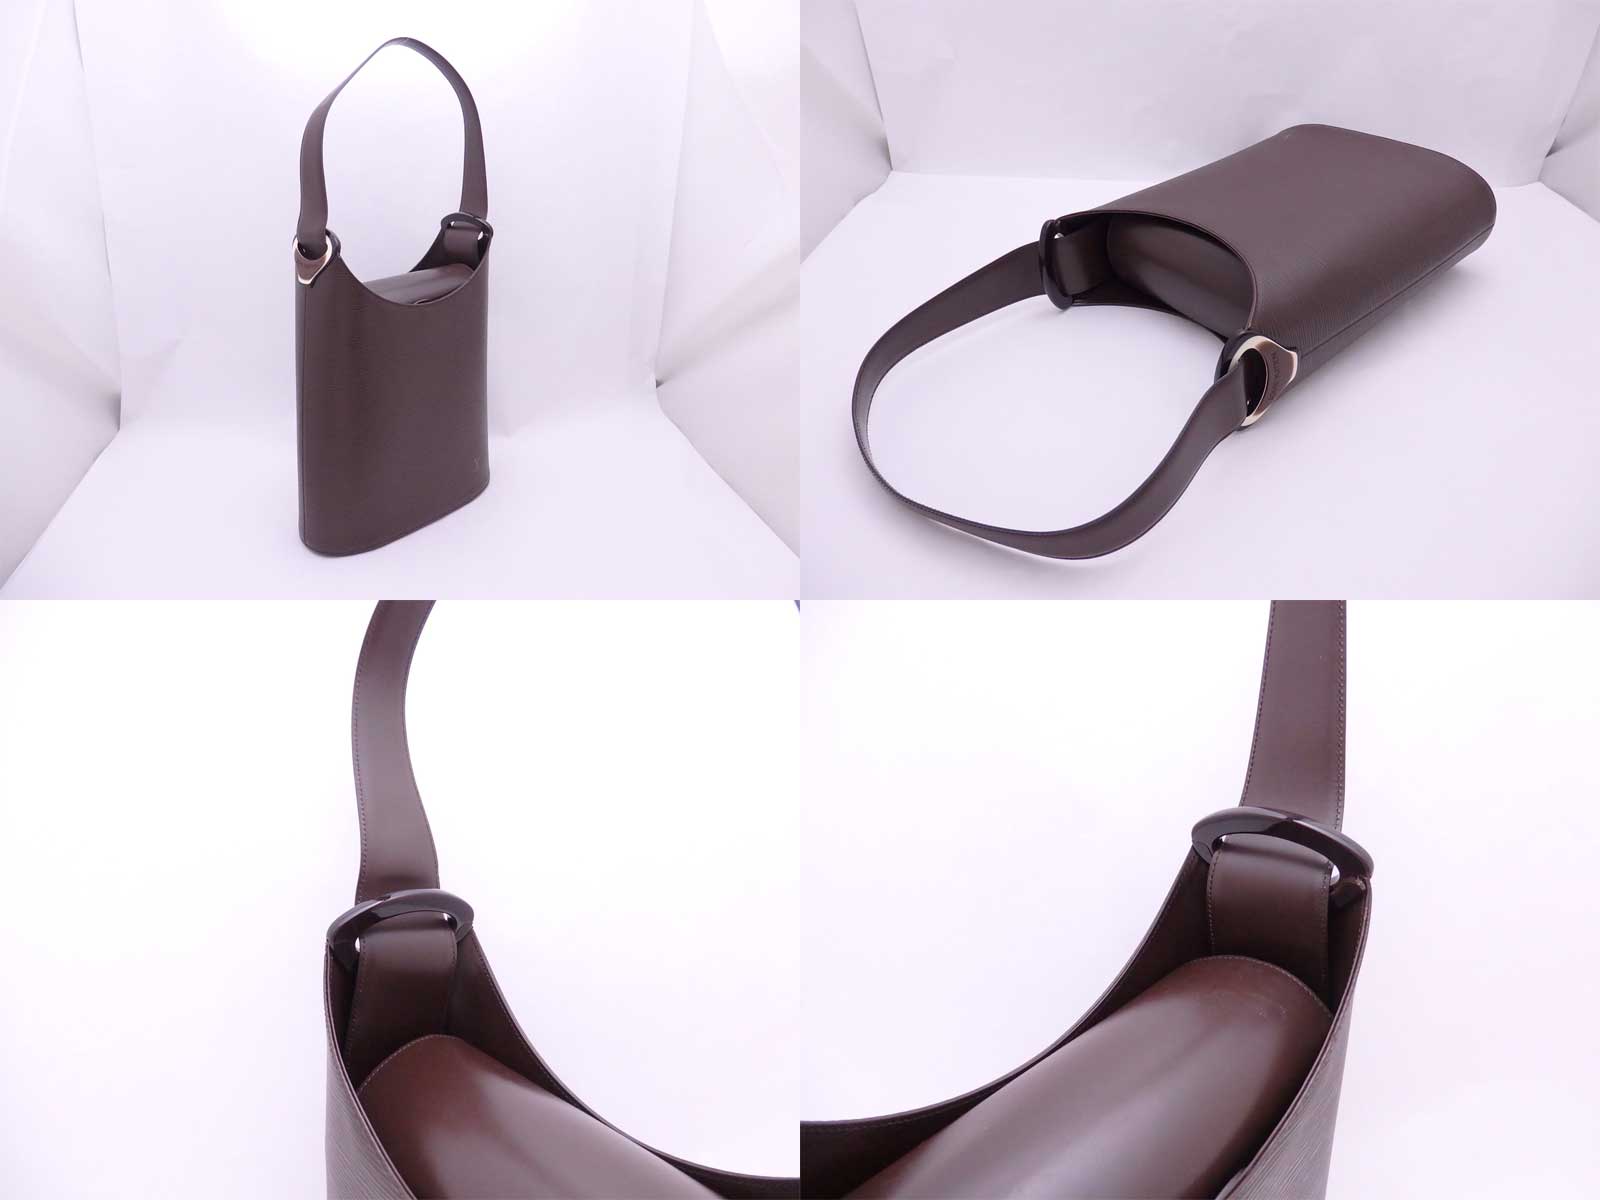 Auth Louis Vuitton Verseau Shoulder Bag Dark Brown Epi Leather *Mint- e45248d | eBay